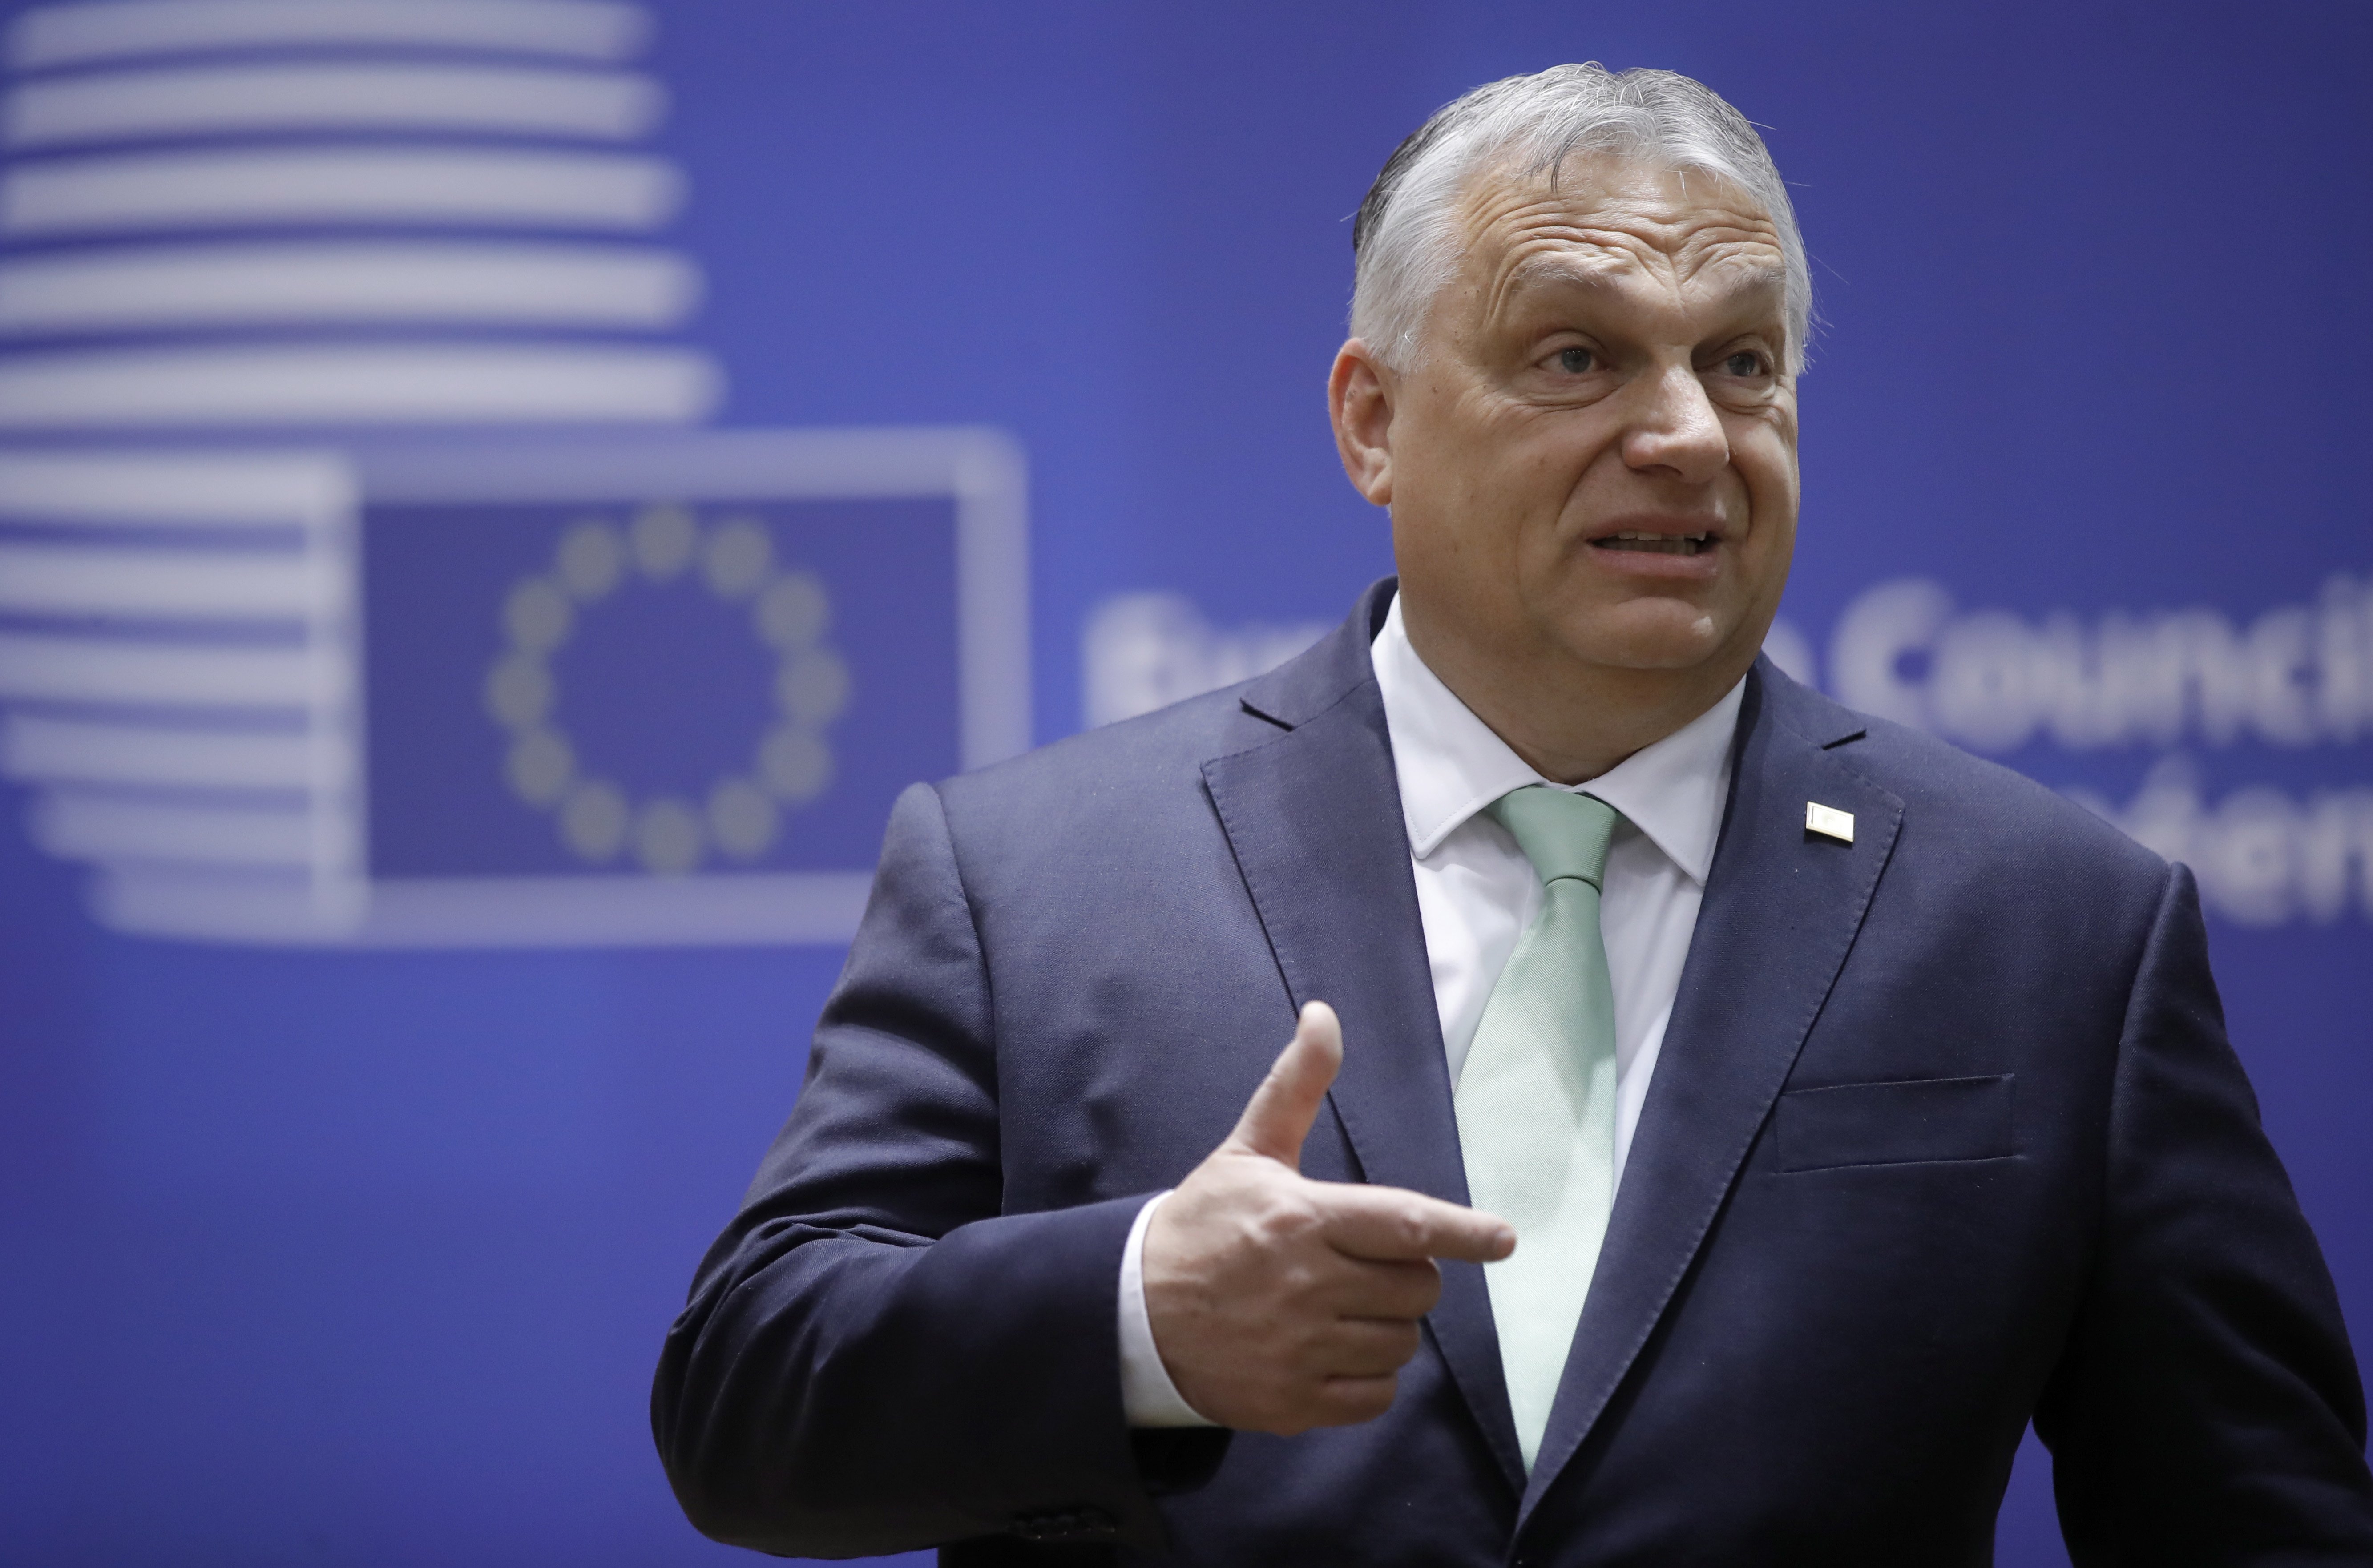 Orbán aixeca el veto per sorpresa: la Unió Europea ja negocia l'adhesió d'Ucraïna